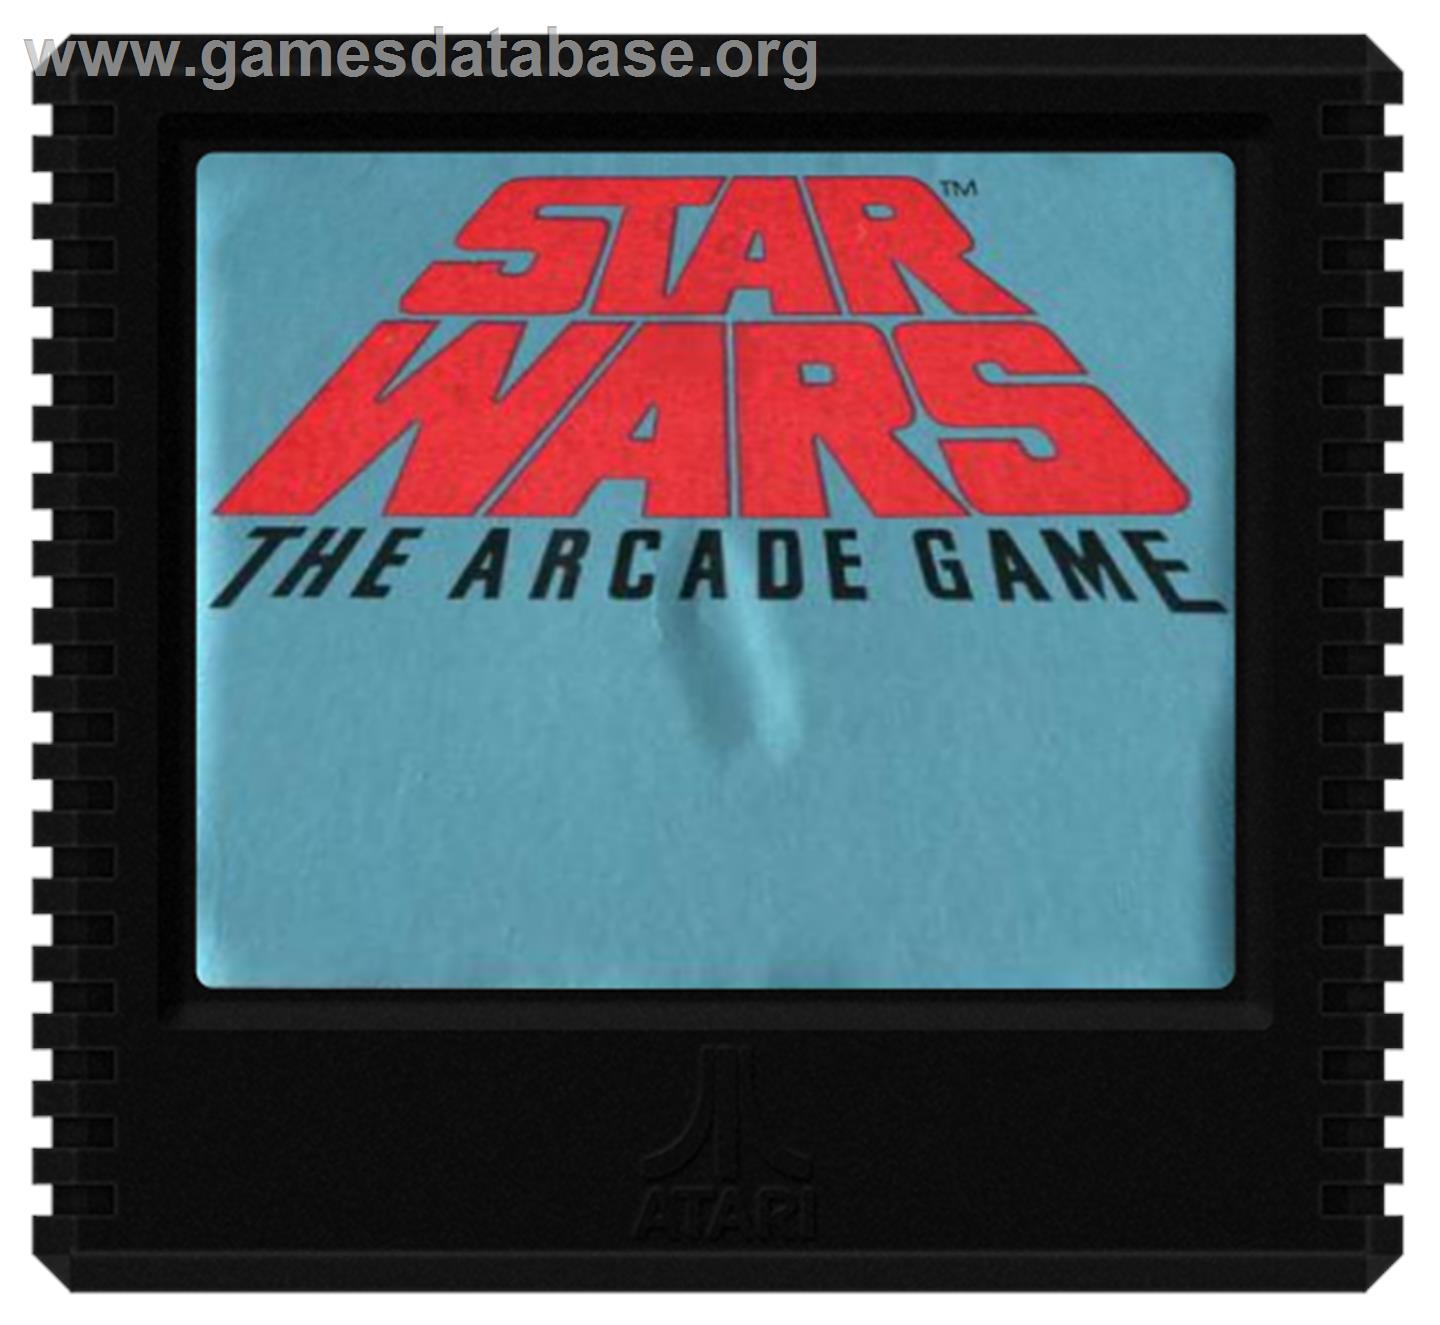 Star Wars Arcade - Atari 5200 - Artwork - Cartridge